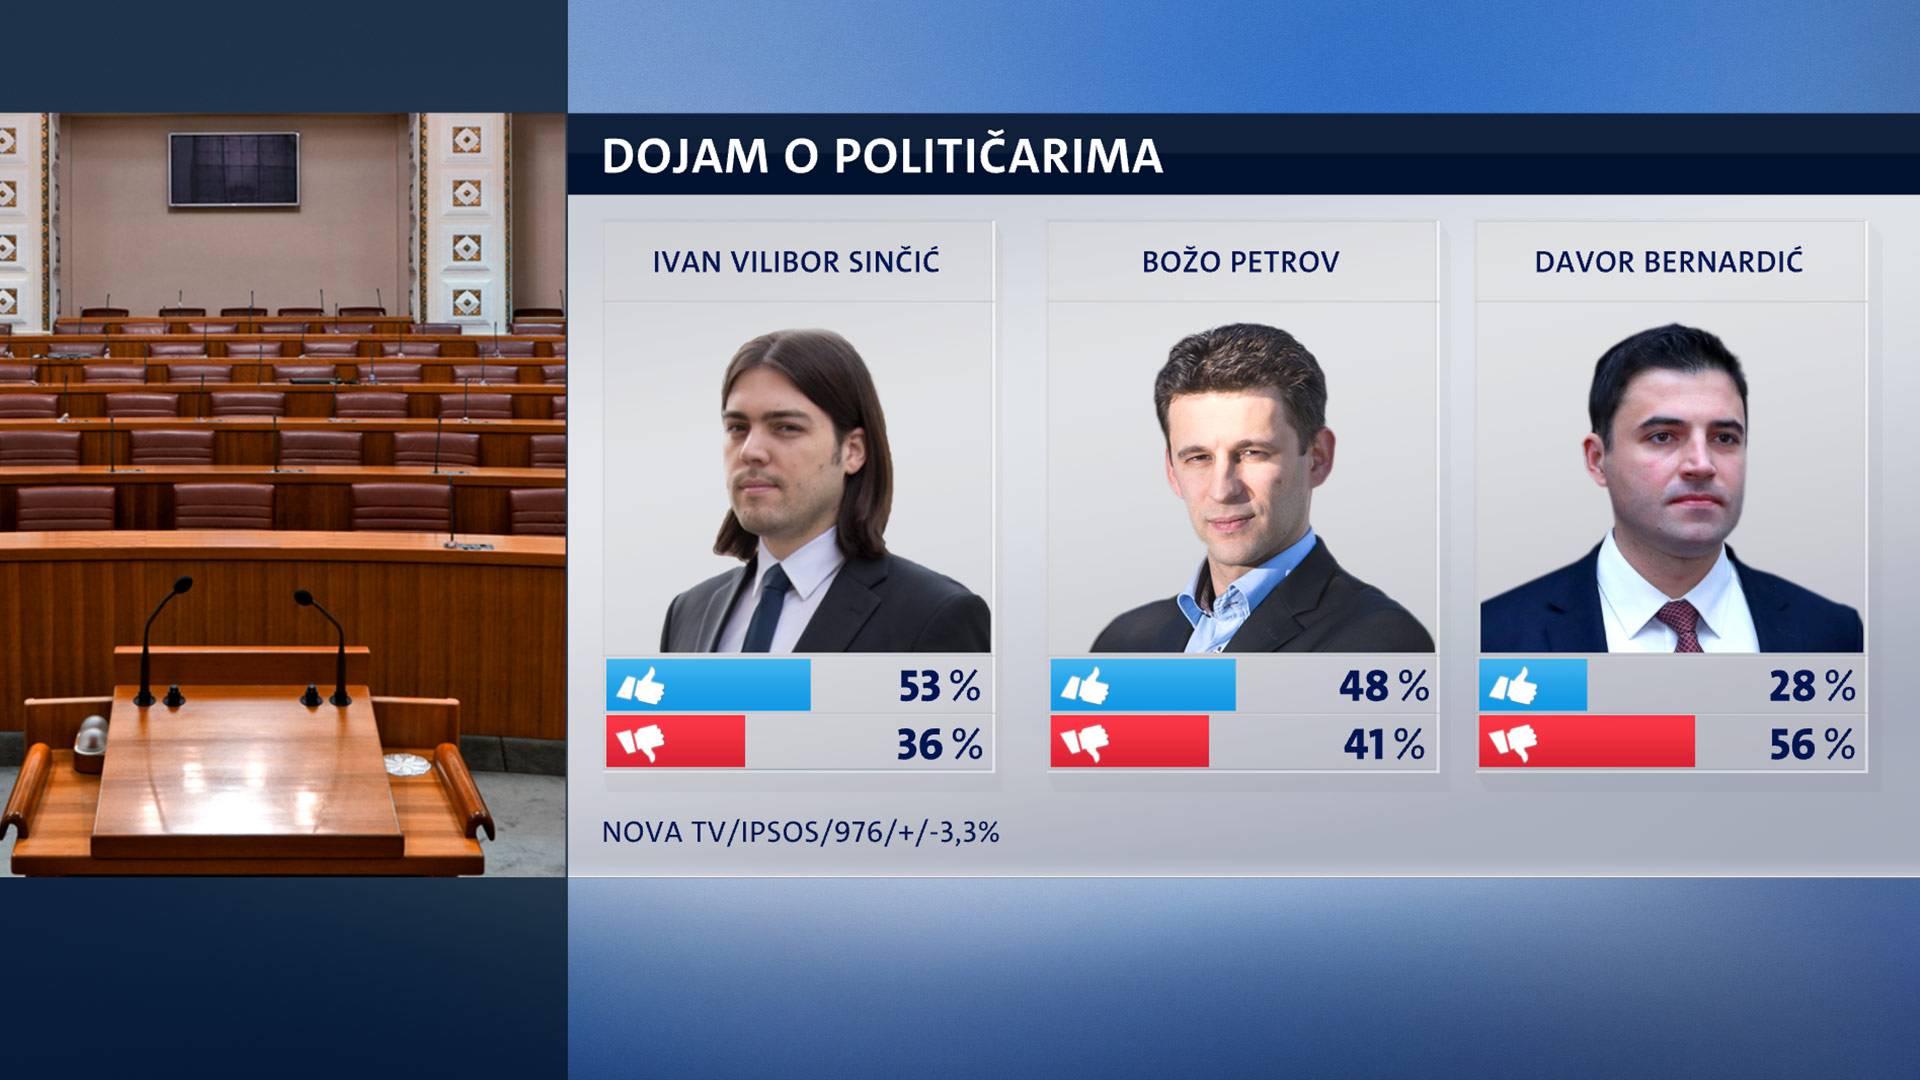 Glasači SDP-a prije bi glasovali za Sinčića nego za Bernardića